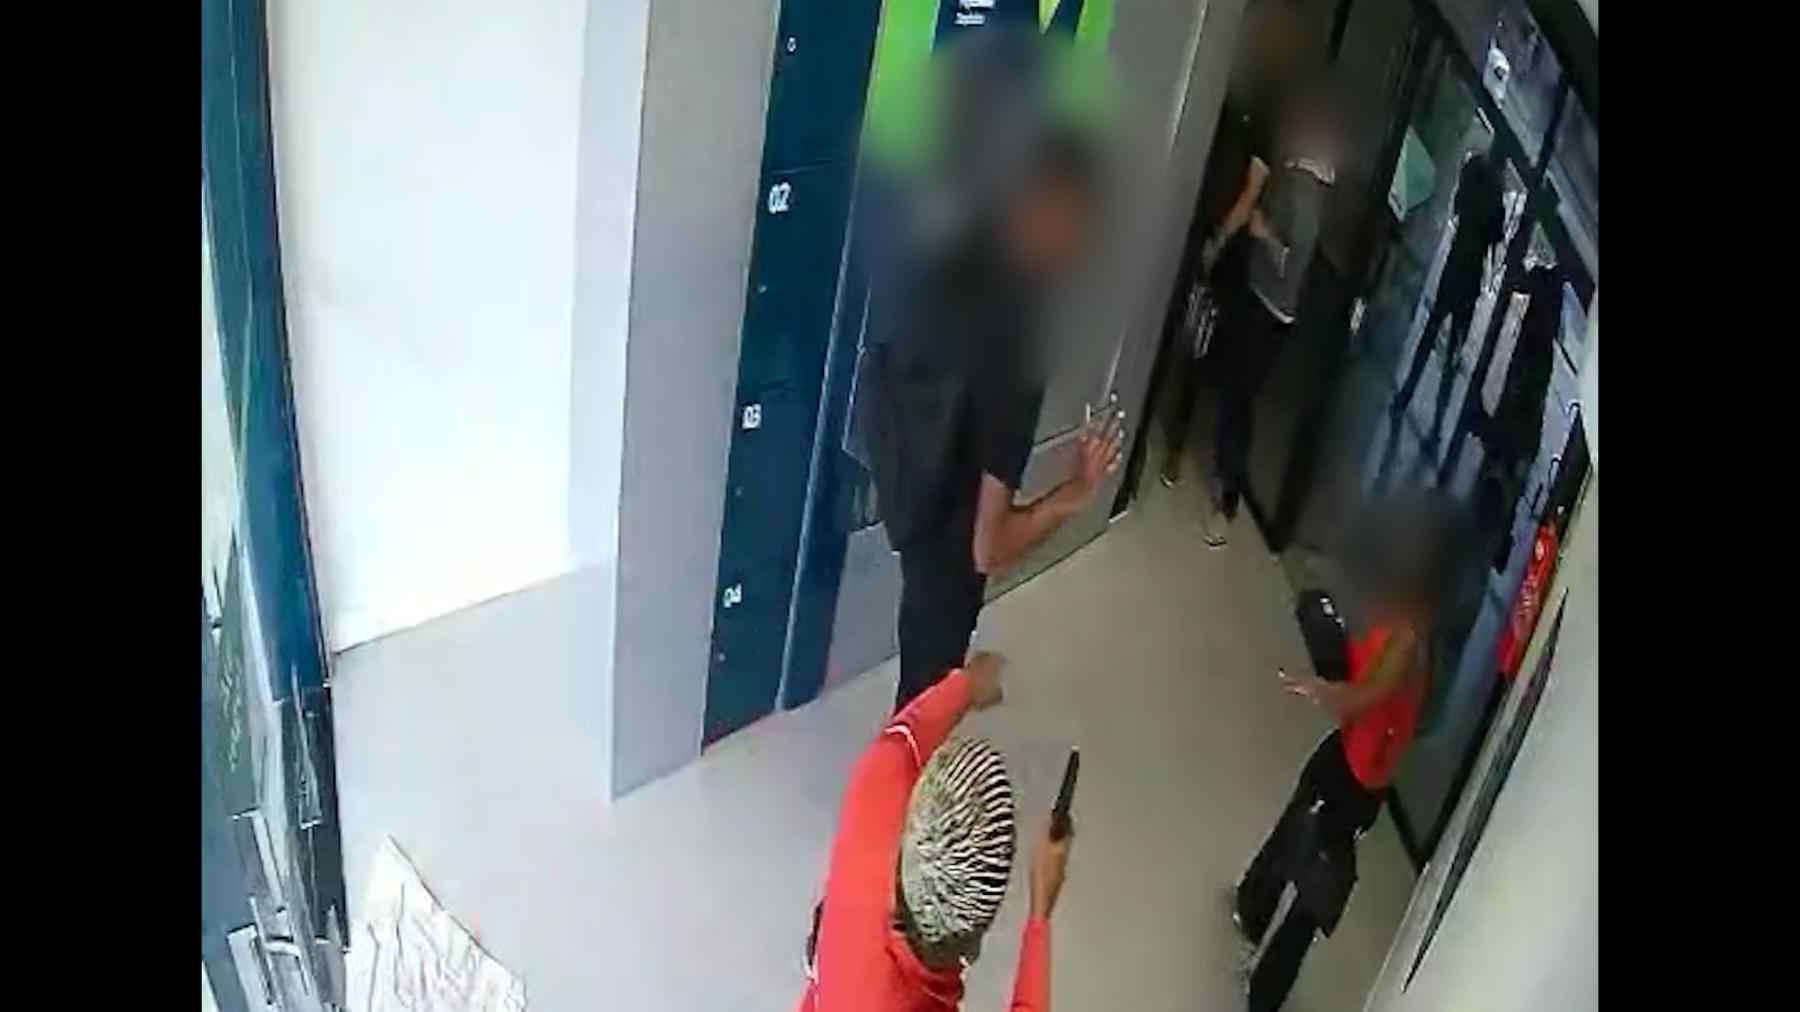 Vídeo: imagens mostram ação de bandidos em assalto a banco no Barreiro - Reprodução